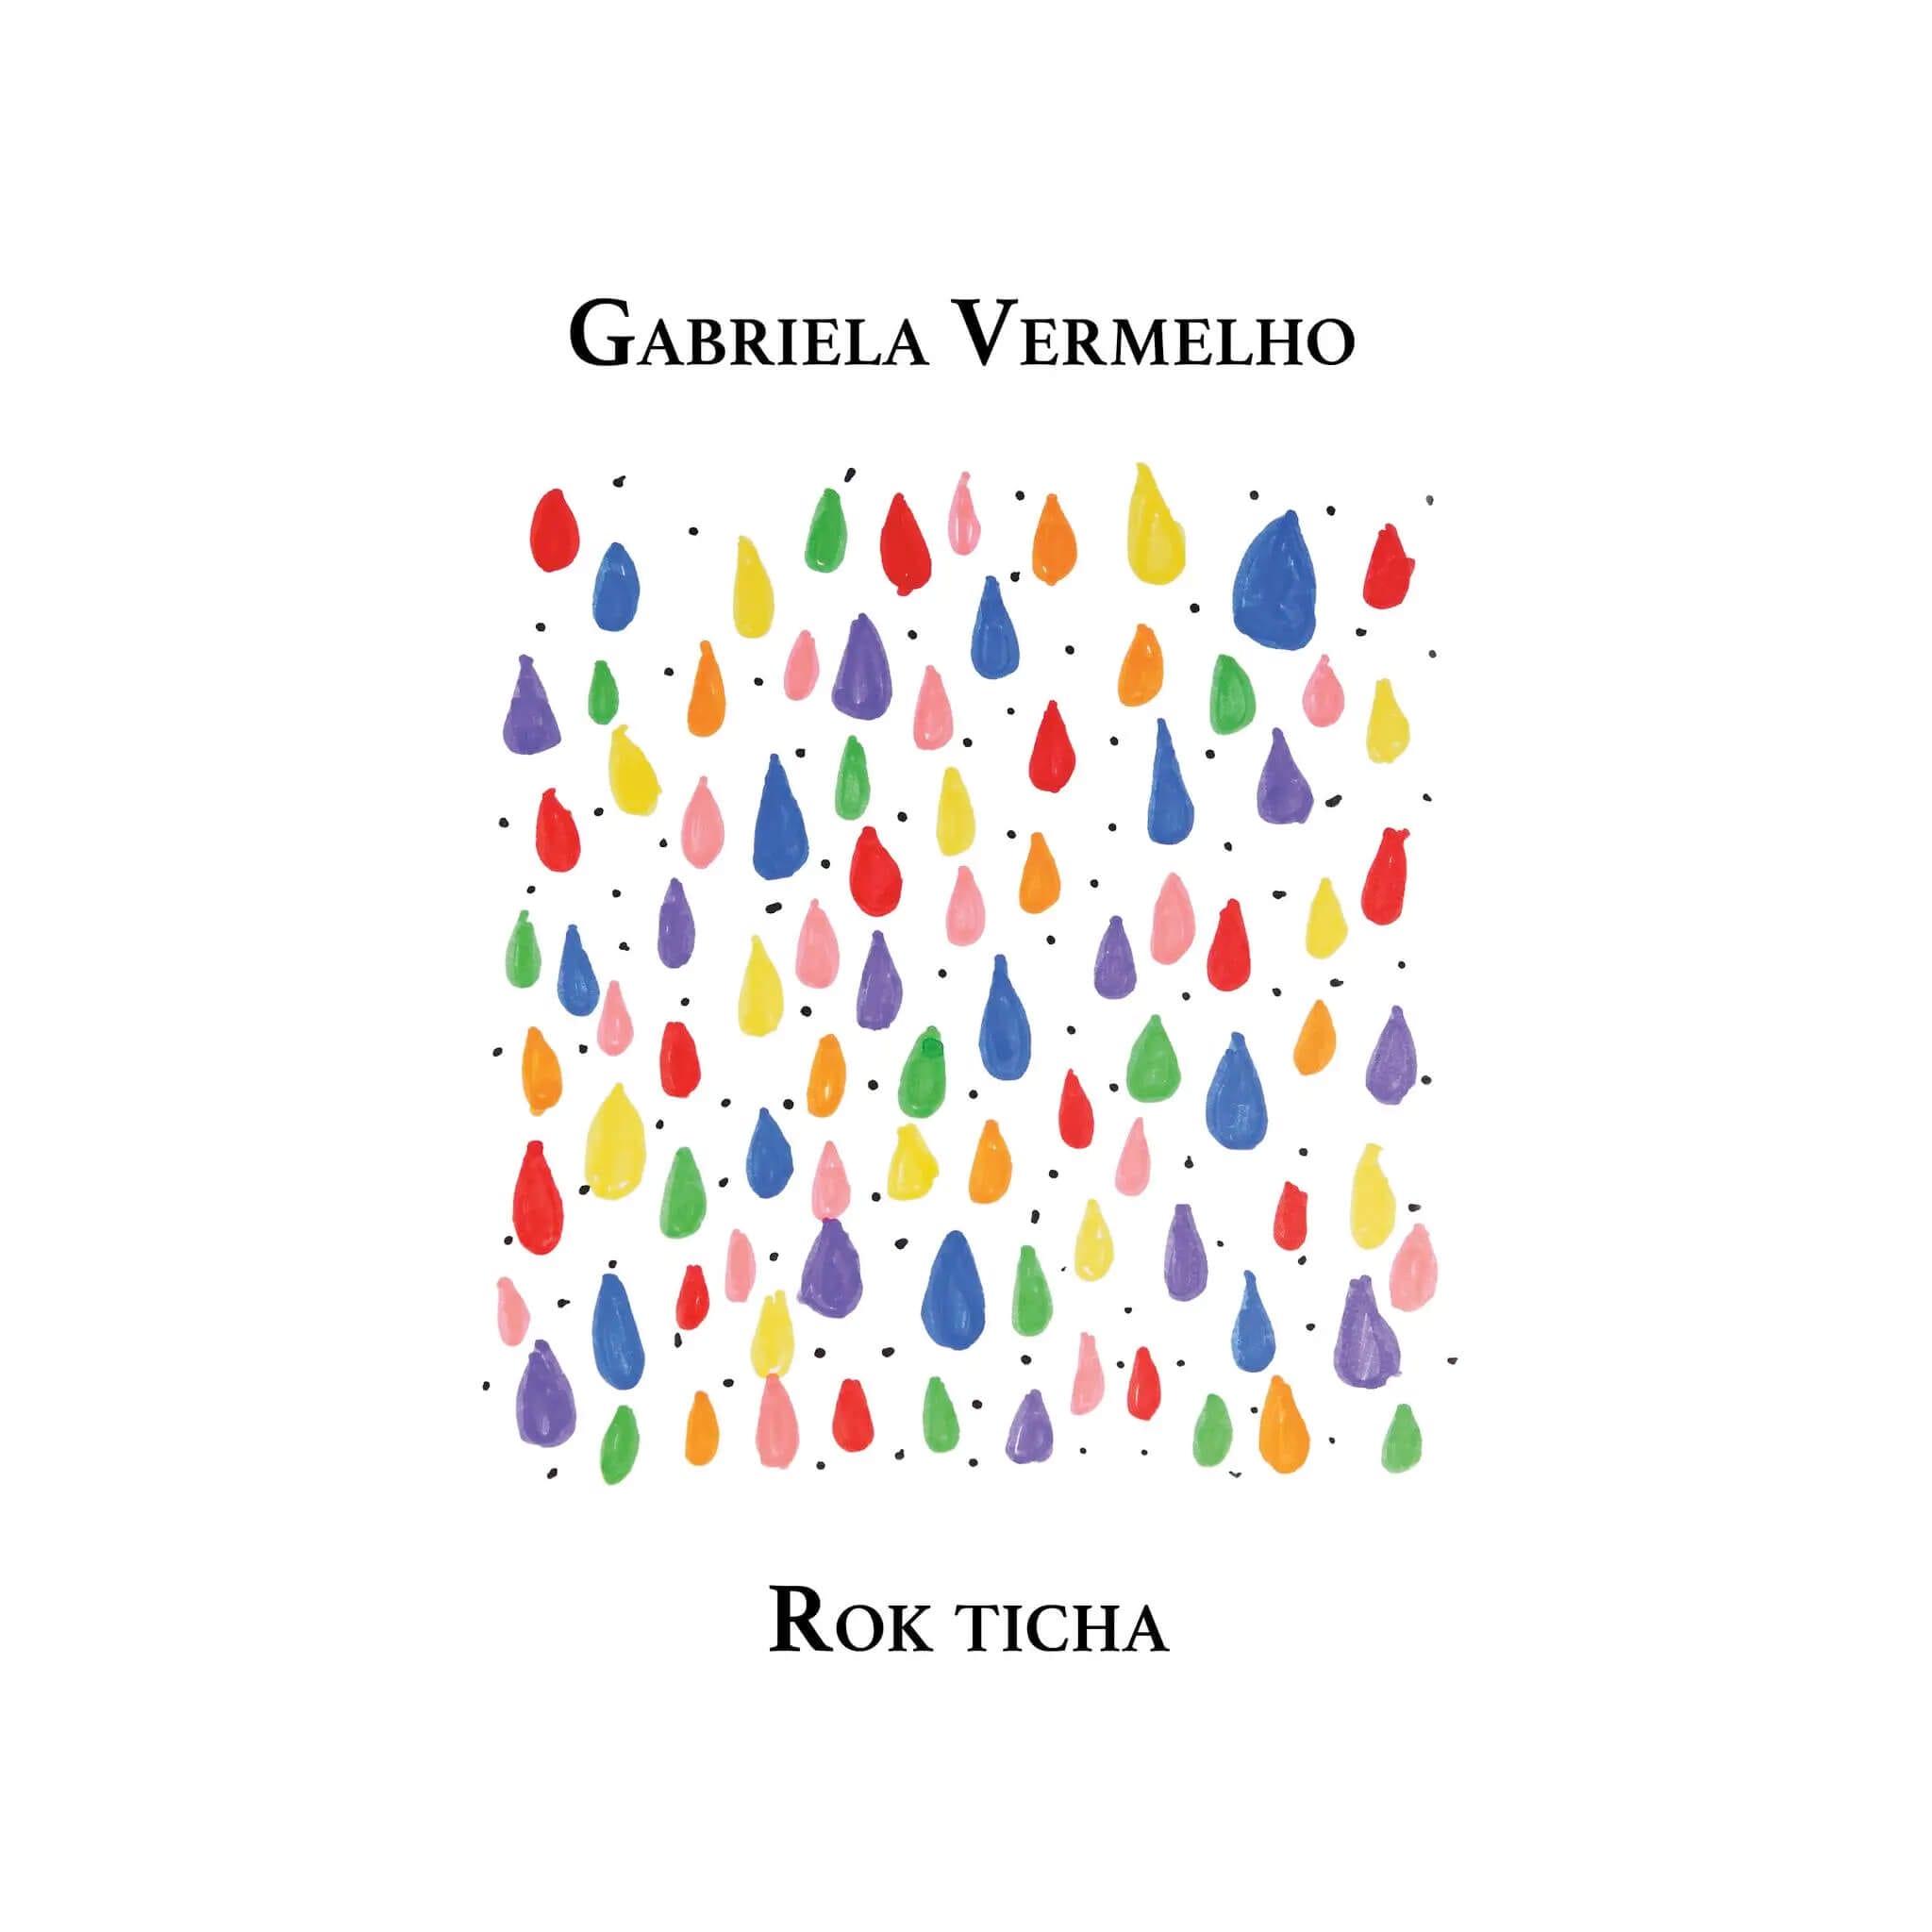 Gabriela Vermelho: Rok ticha